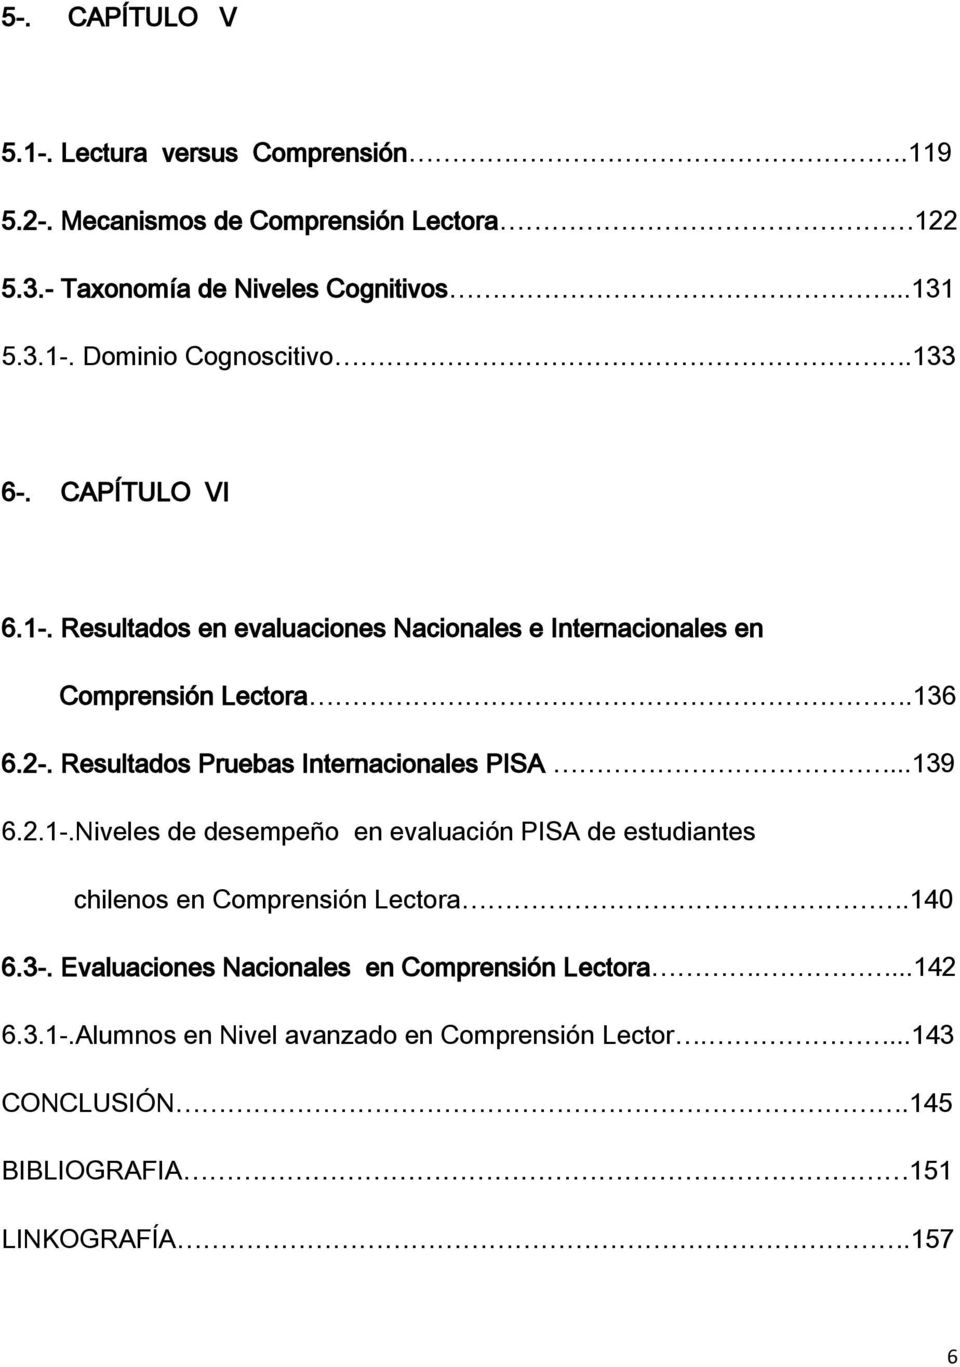 Resultados Pruebas Internacionales PISA...139 6.2.1-.Niveles de desempeño en evaluación PISA de estudiantes chilenos en Comprensión Lectora.140 6.3-.